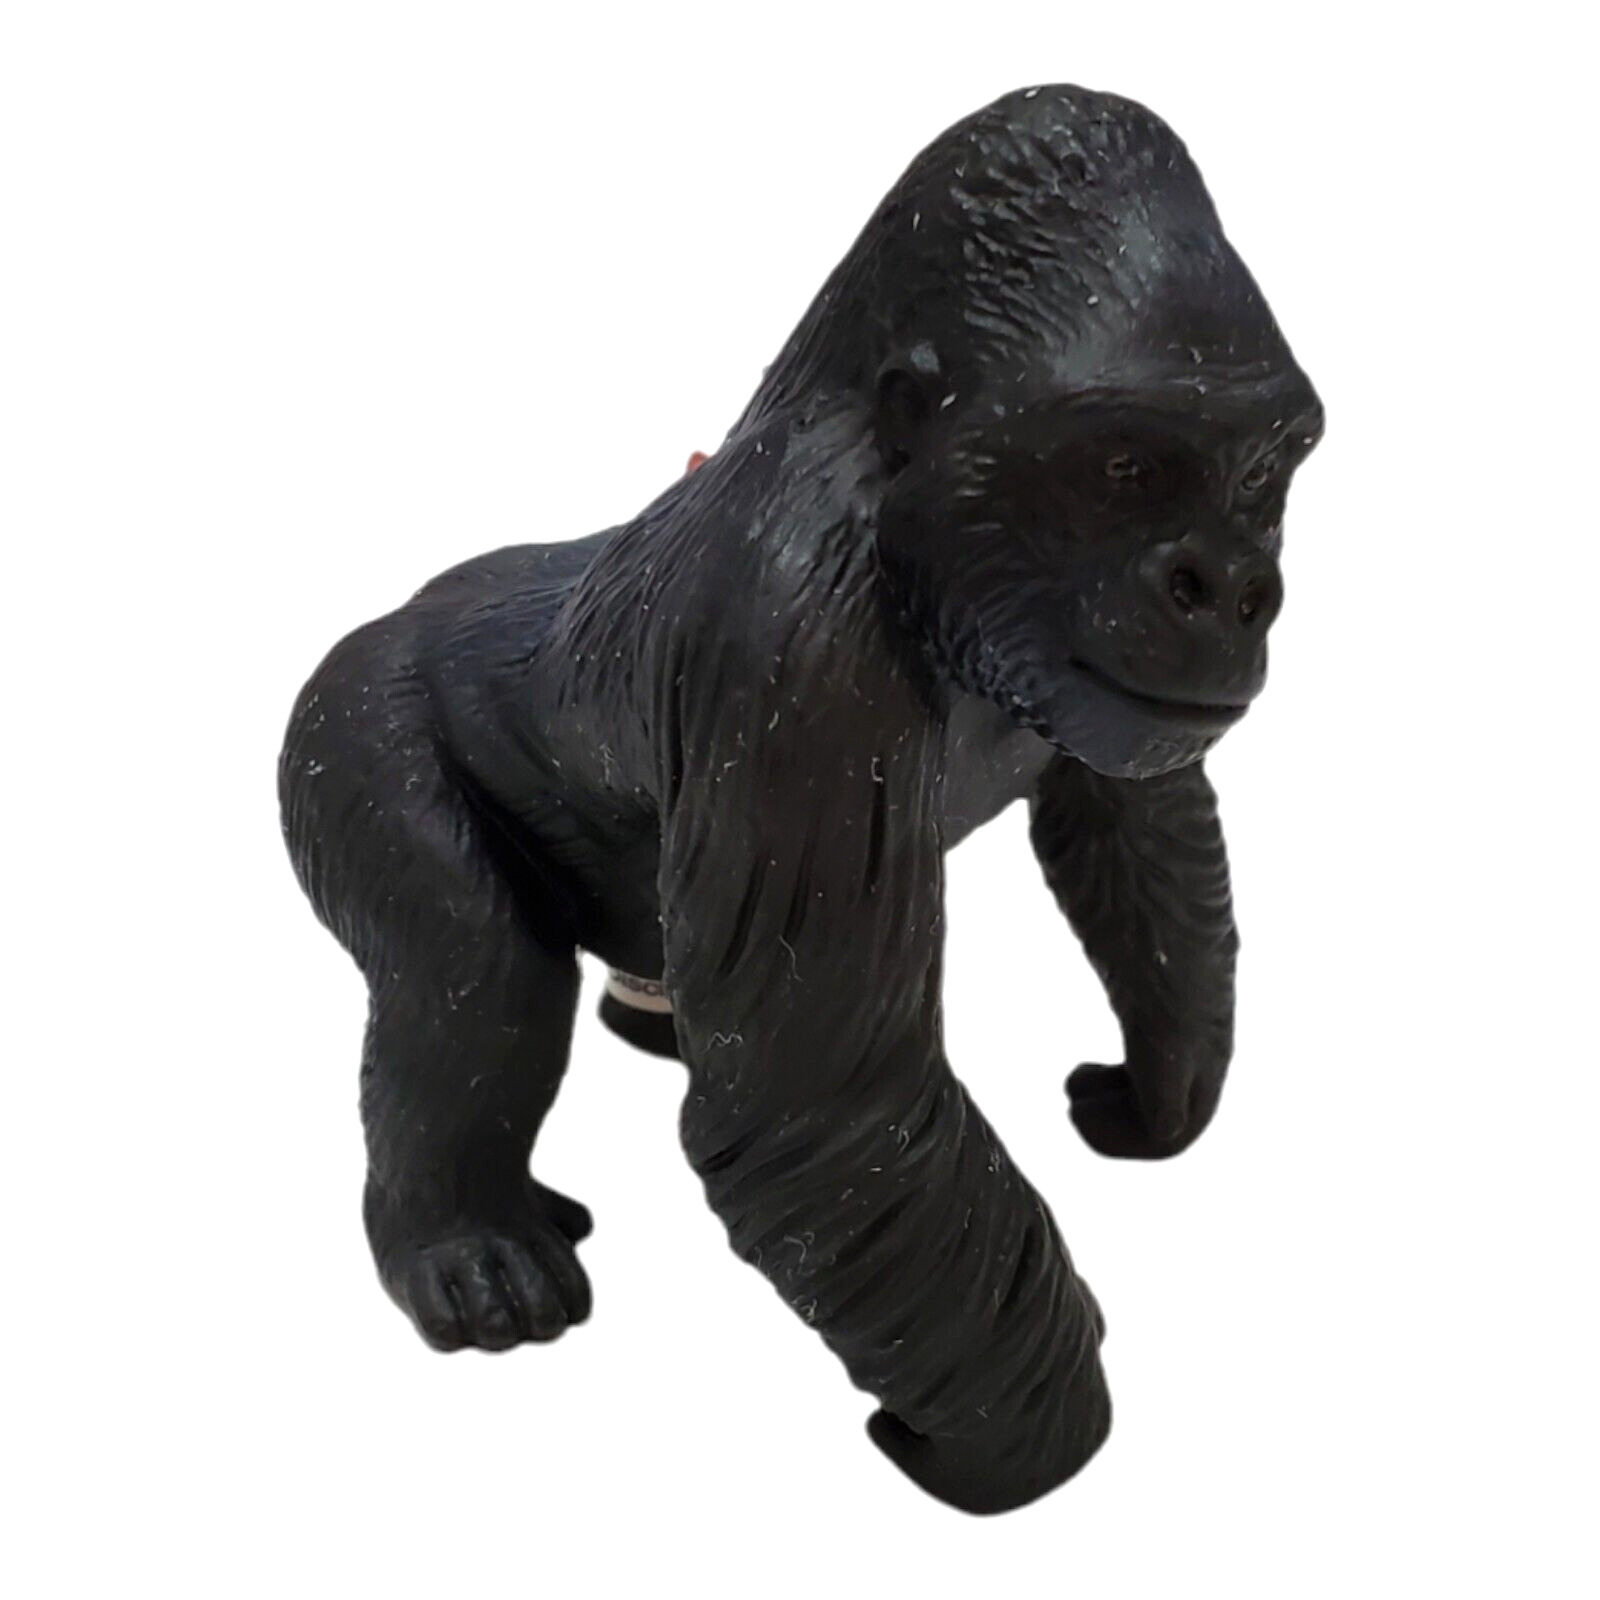 Schleich Male Gorilla #14196 Retired Animal Figure Wildlife 